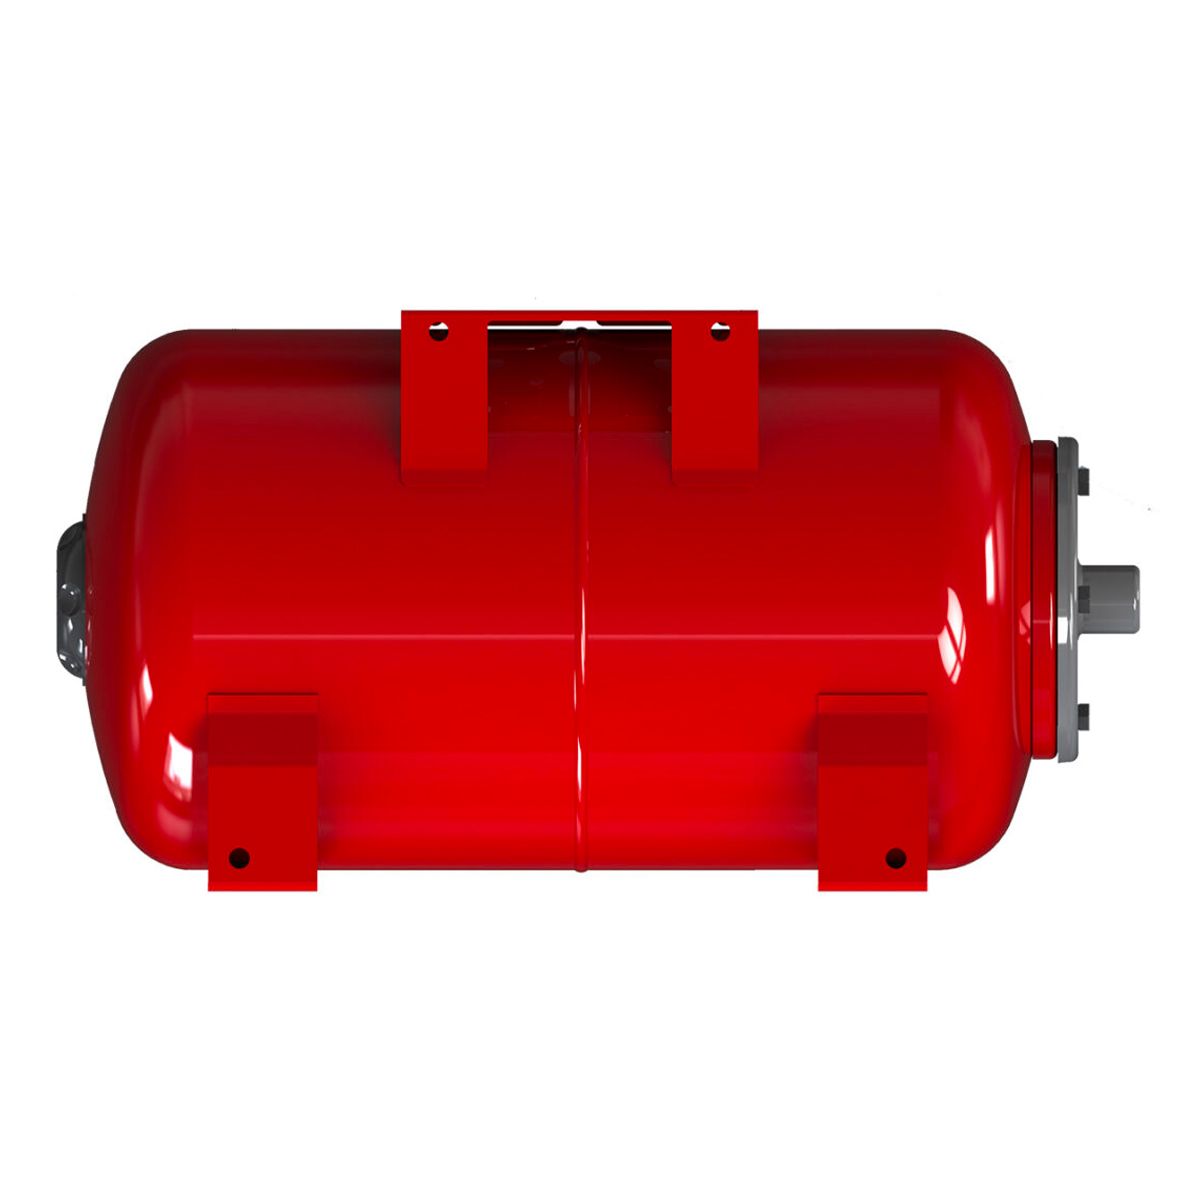 Replacement Tank for Pressure Pump Varem